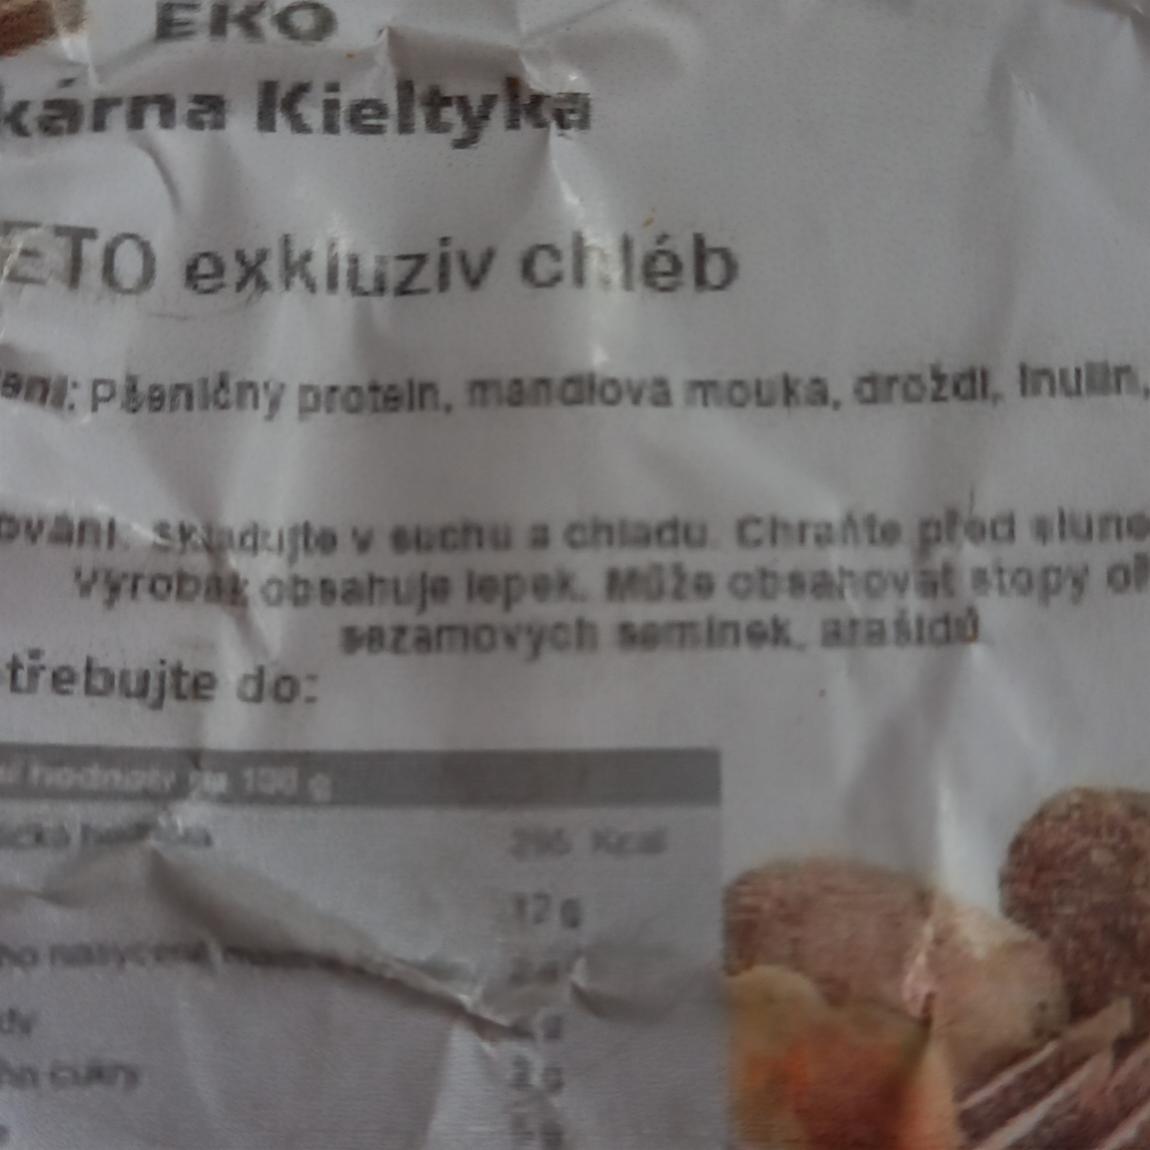 Fotografie - Keto exkluziv chléb EKO pekárna Kieltyka